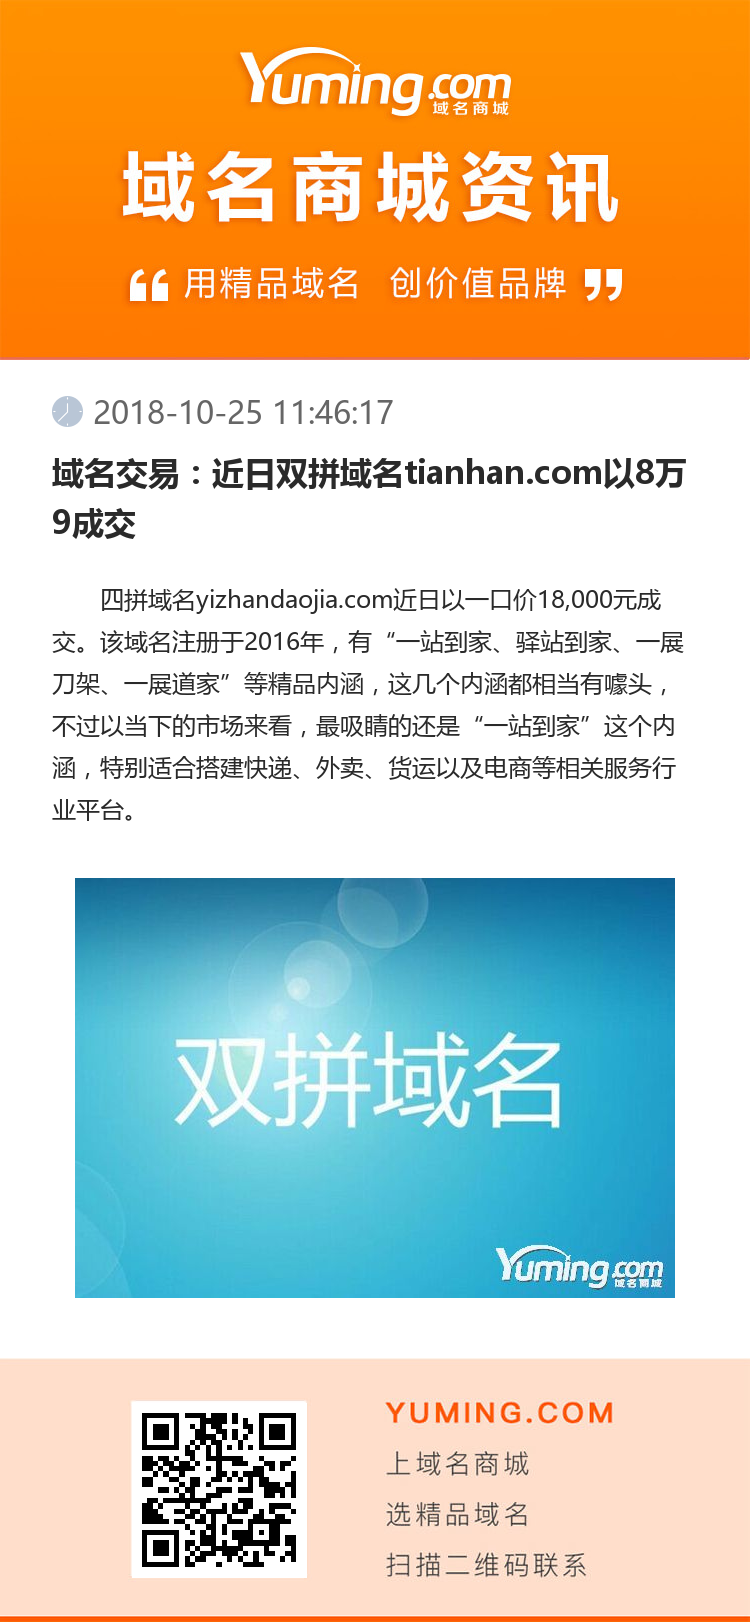 域名交易：近日双拼域名tianhan.com以8万9成交